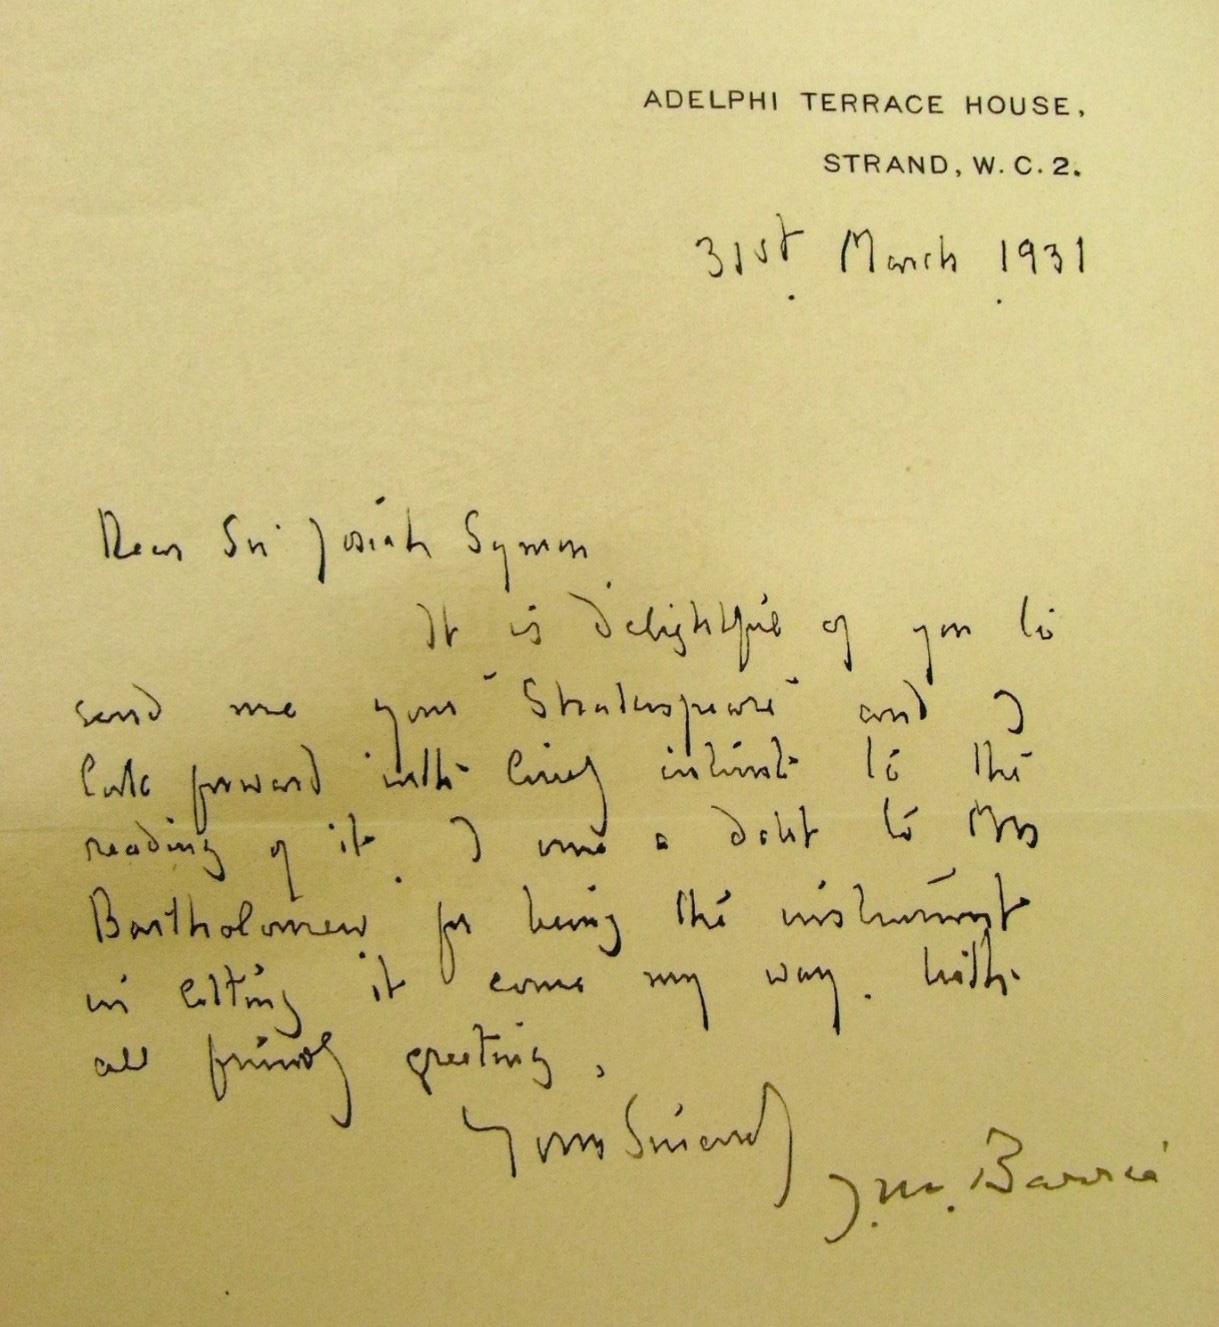 Letter written by J.M. Barrie to Josiah Symons, 1931.